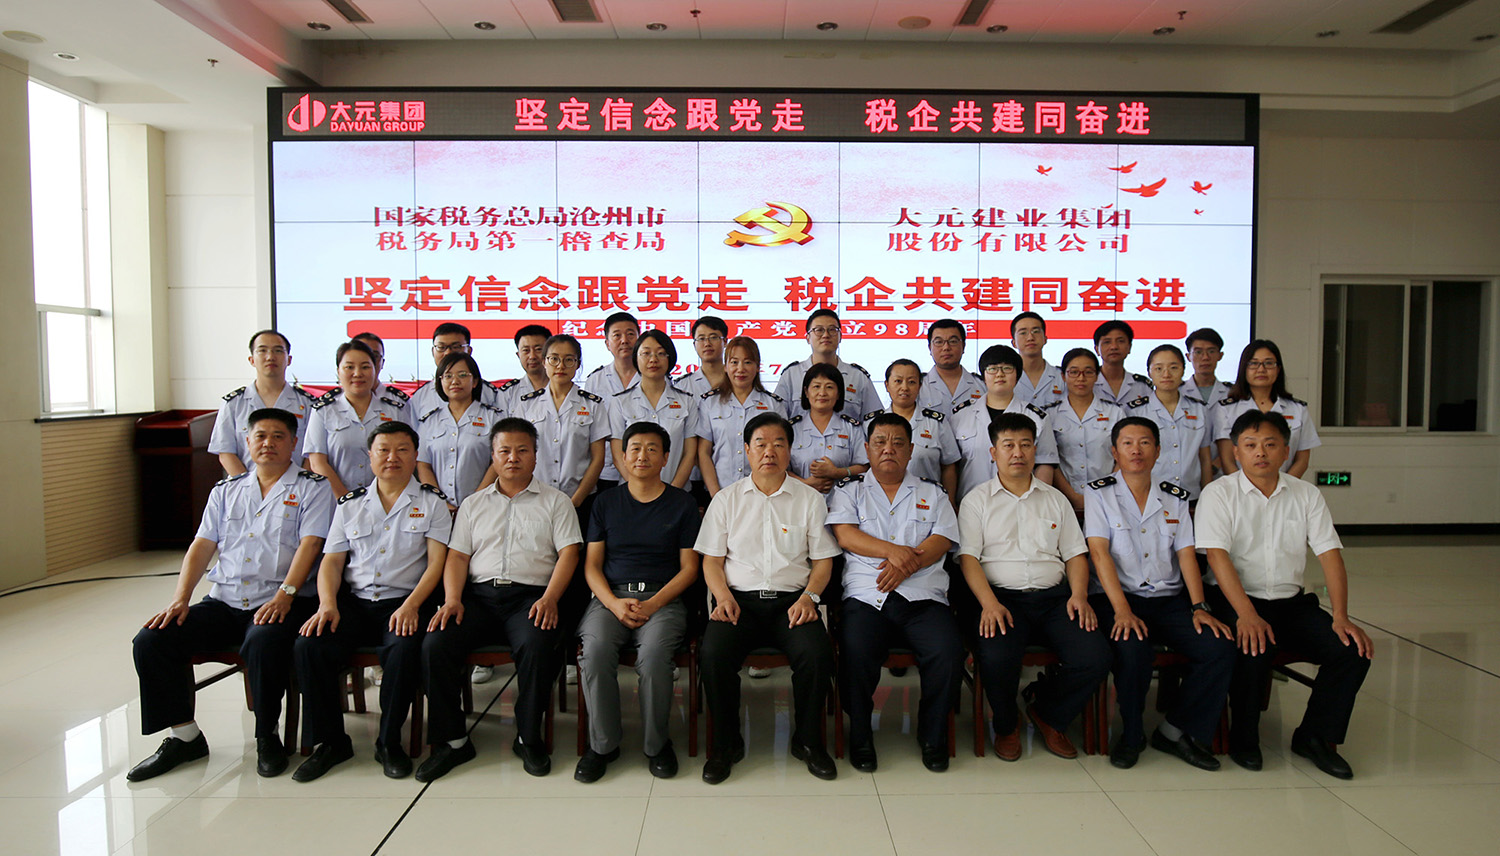 沧州市税务局与大元集团开展党建共建活动